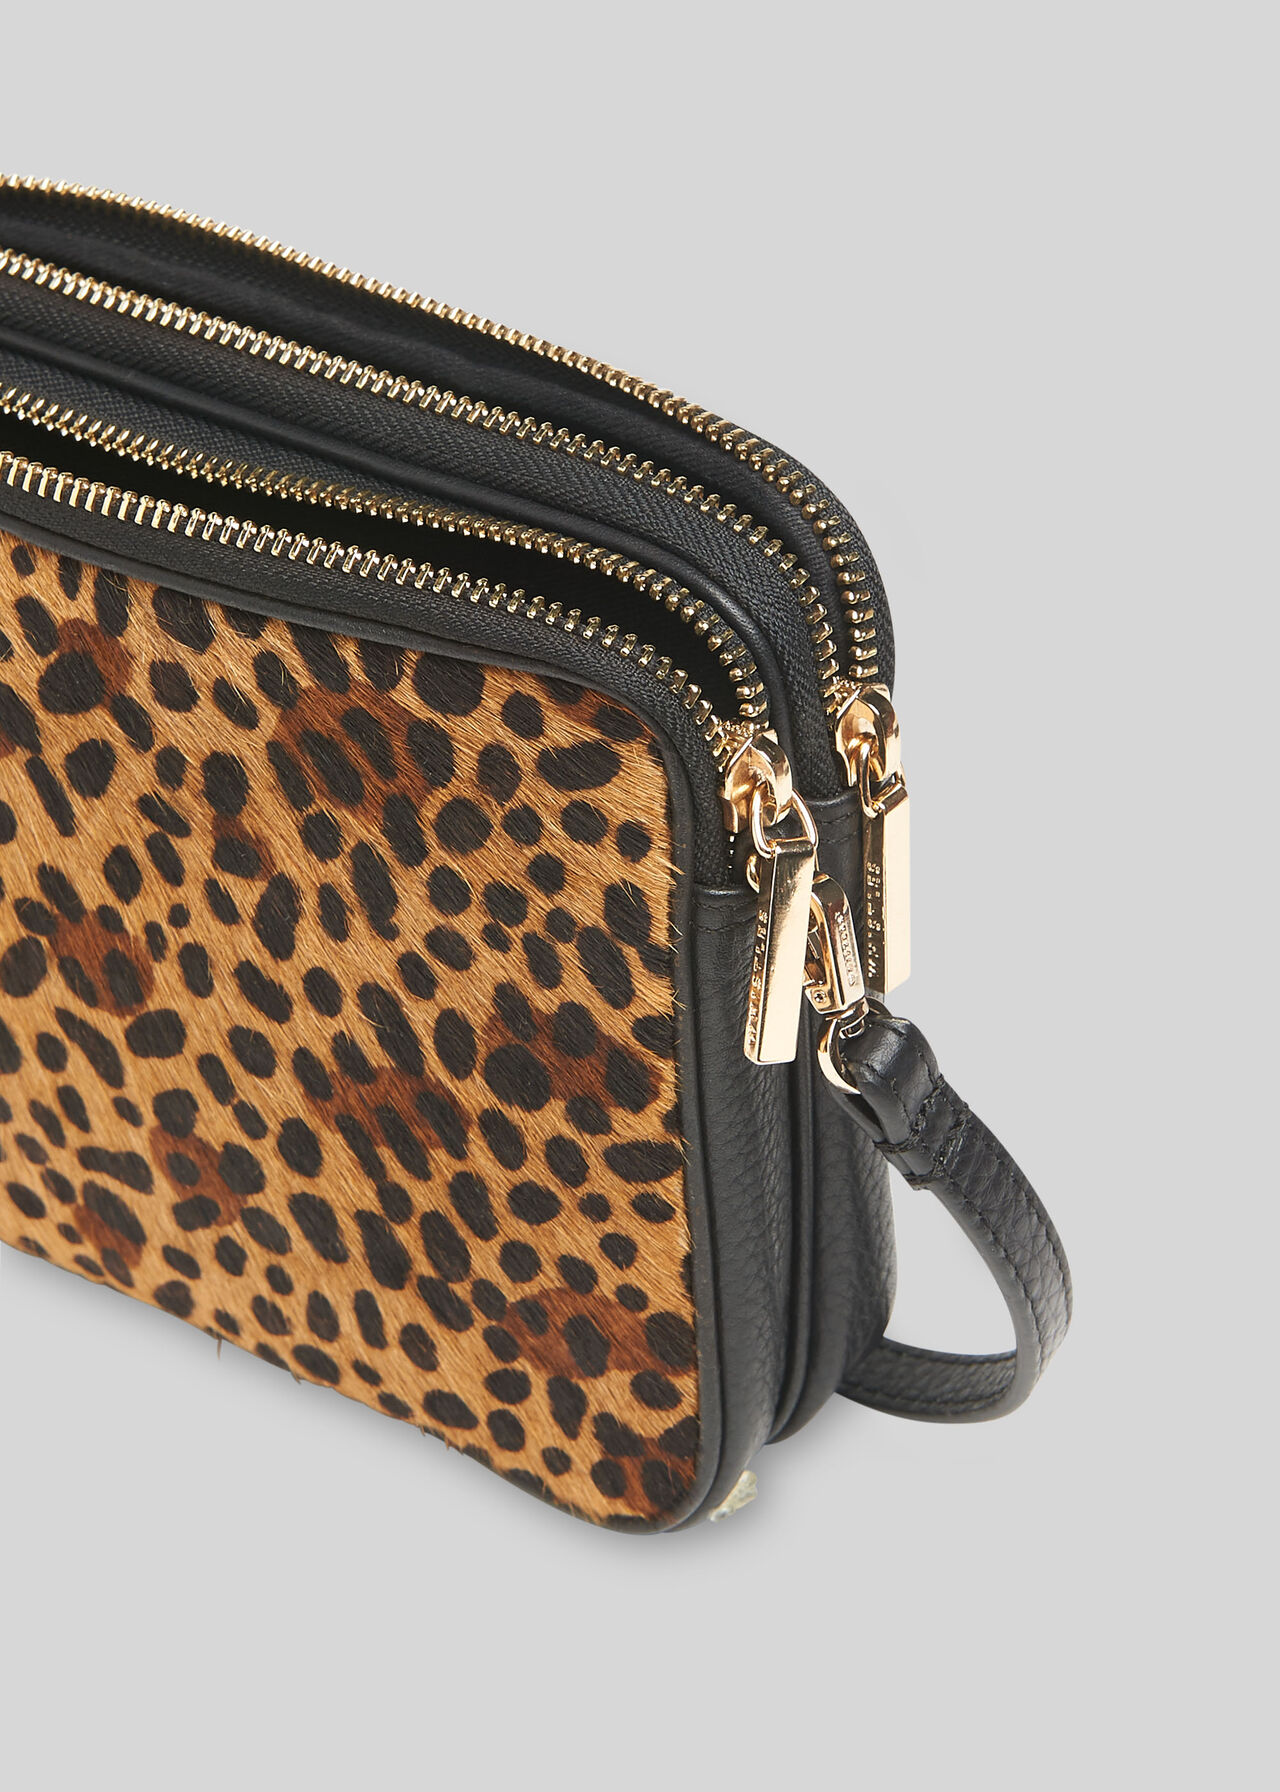 Cami Leopard Crossbody Bag Leopard Print